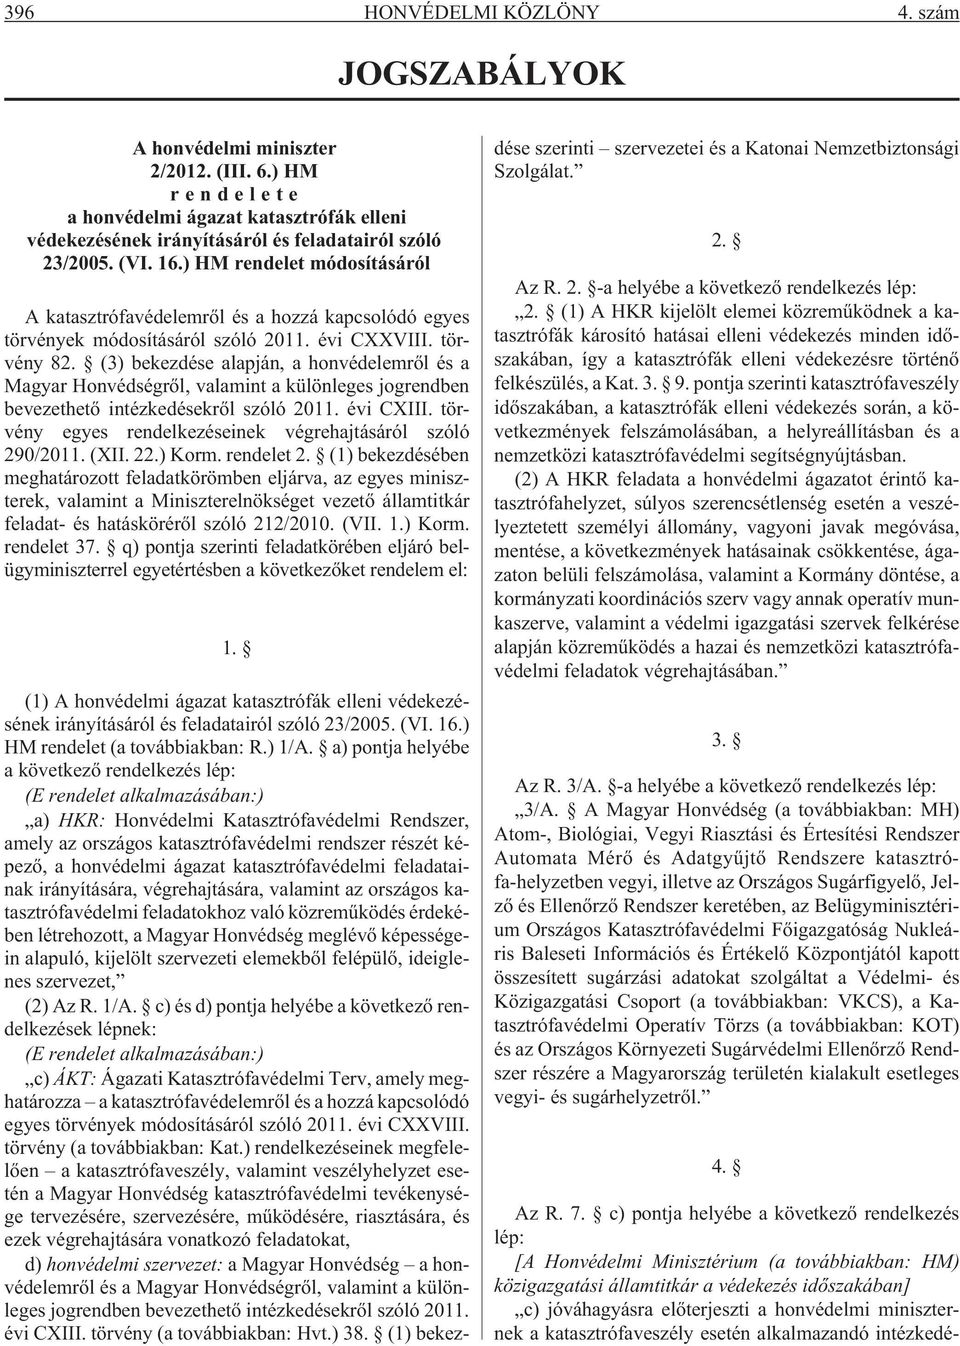 (3) bekezdése alapján, a honvédelemrõl és a Magyar Honvédségrõl, valamint a különleges jogrendben bevezethetõ intézkedésekrõl szóló 2011. évi CXIII.